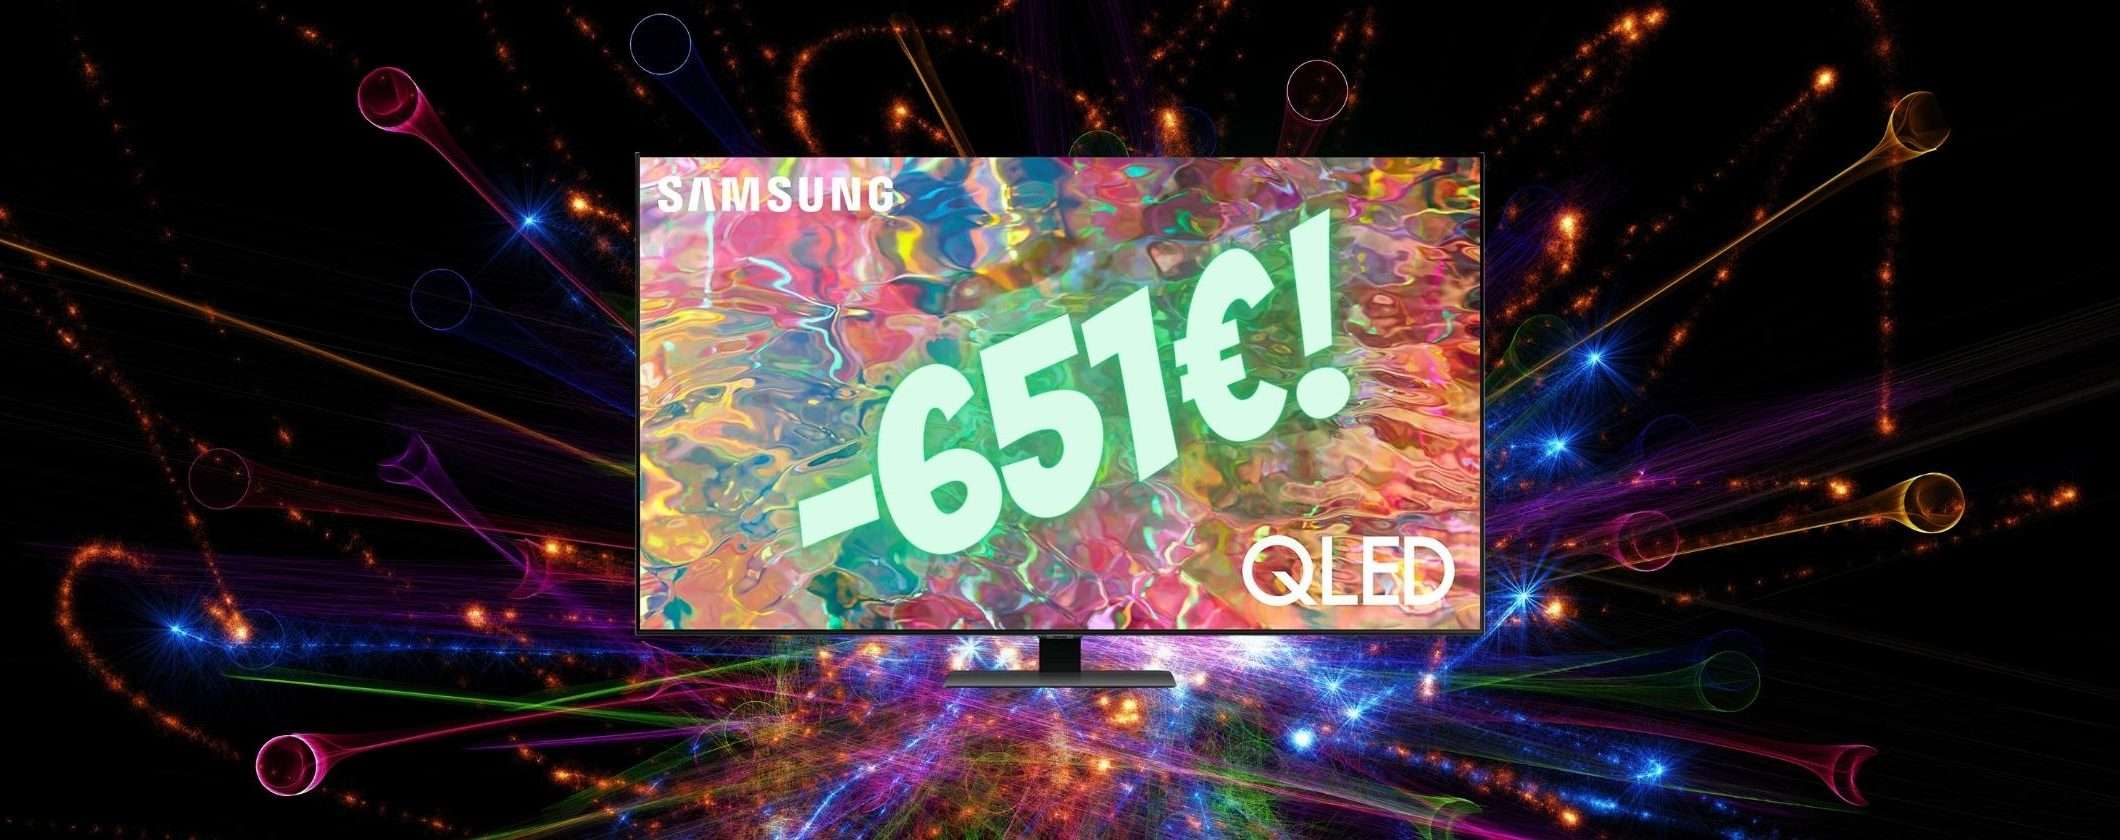 Smart TV Samsung QLED 50